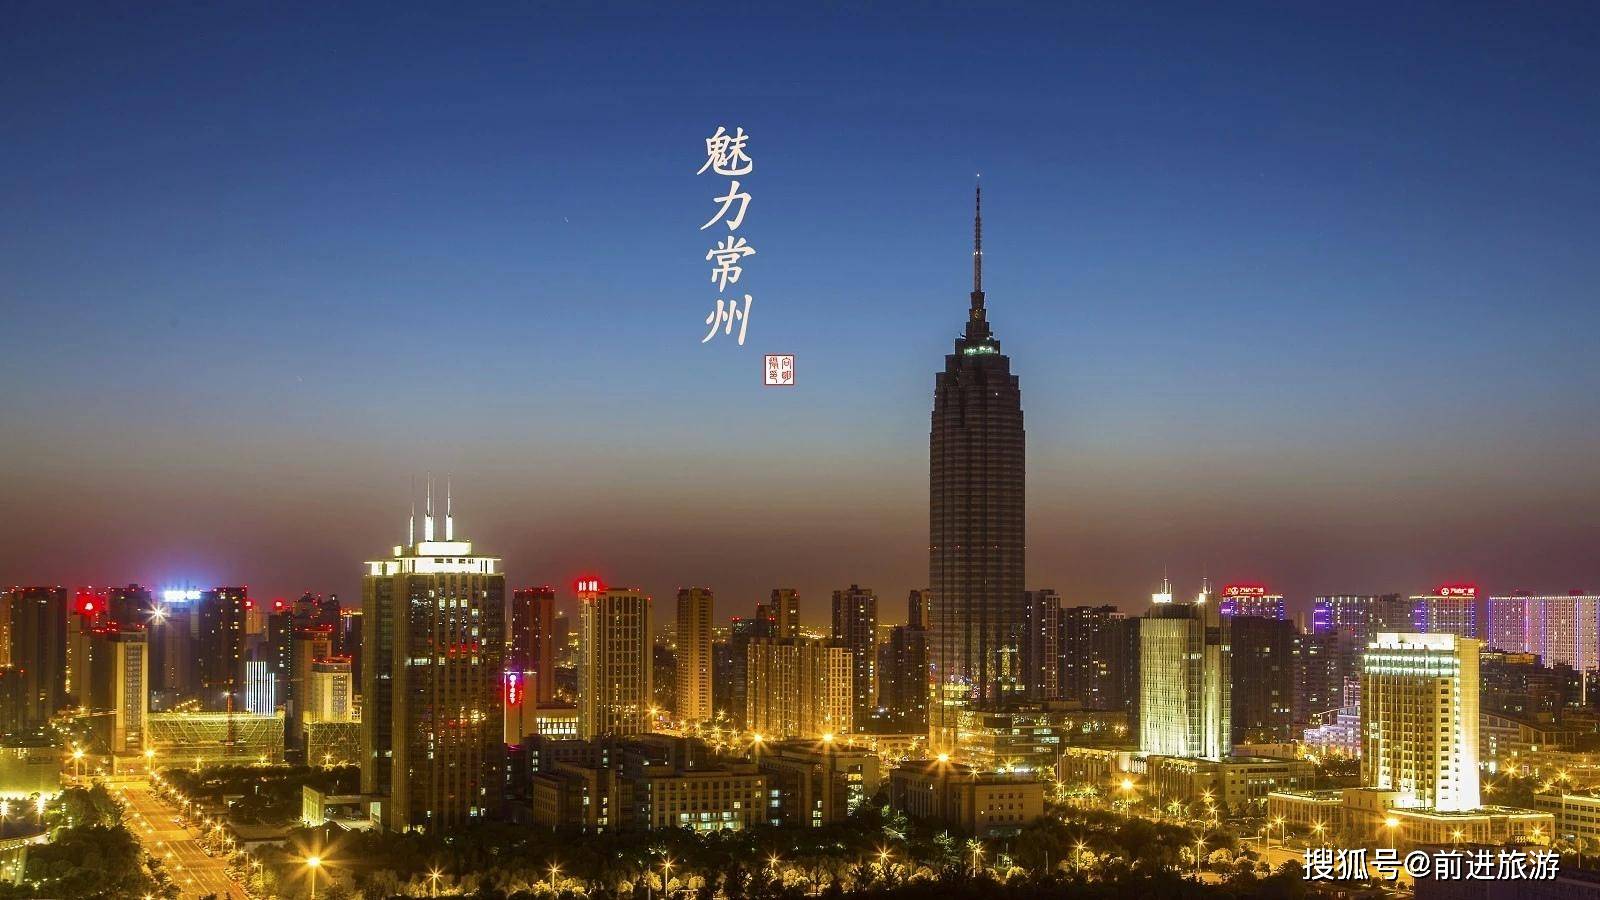 常州,位于江苏省南部,是长三角的腹地城市.